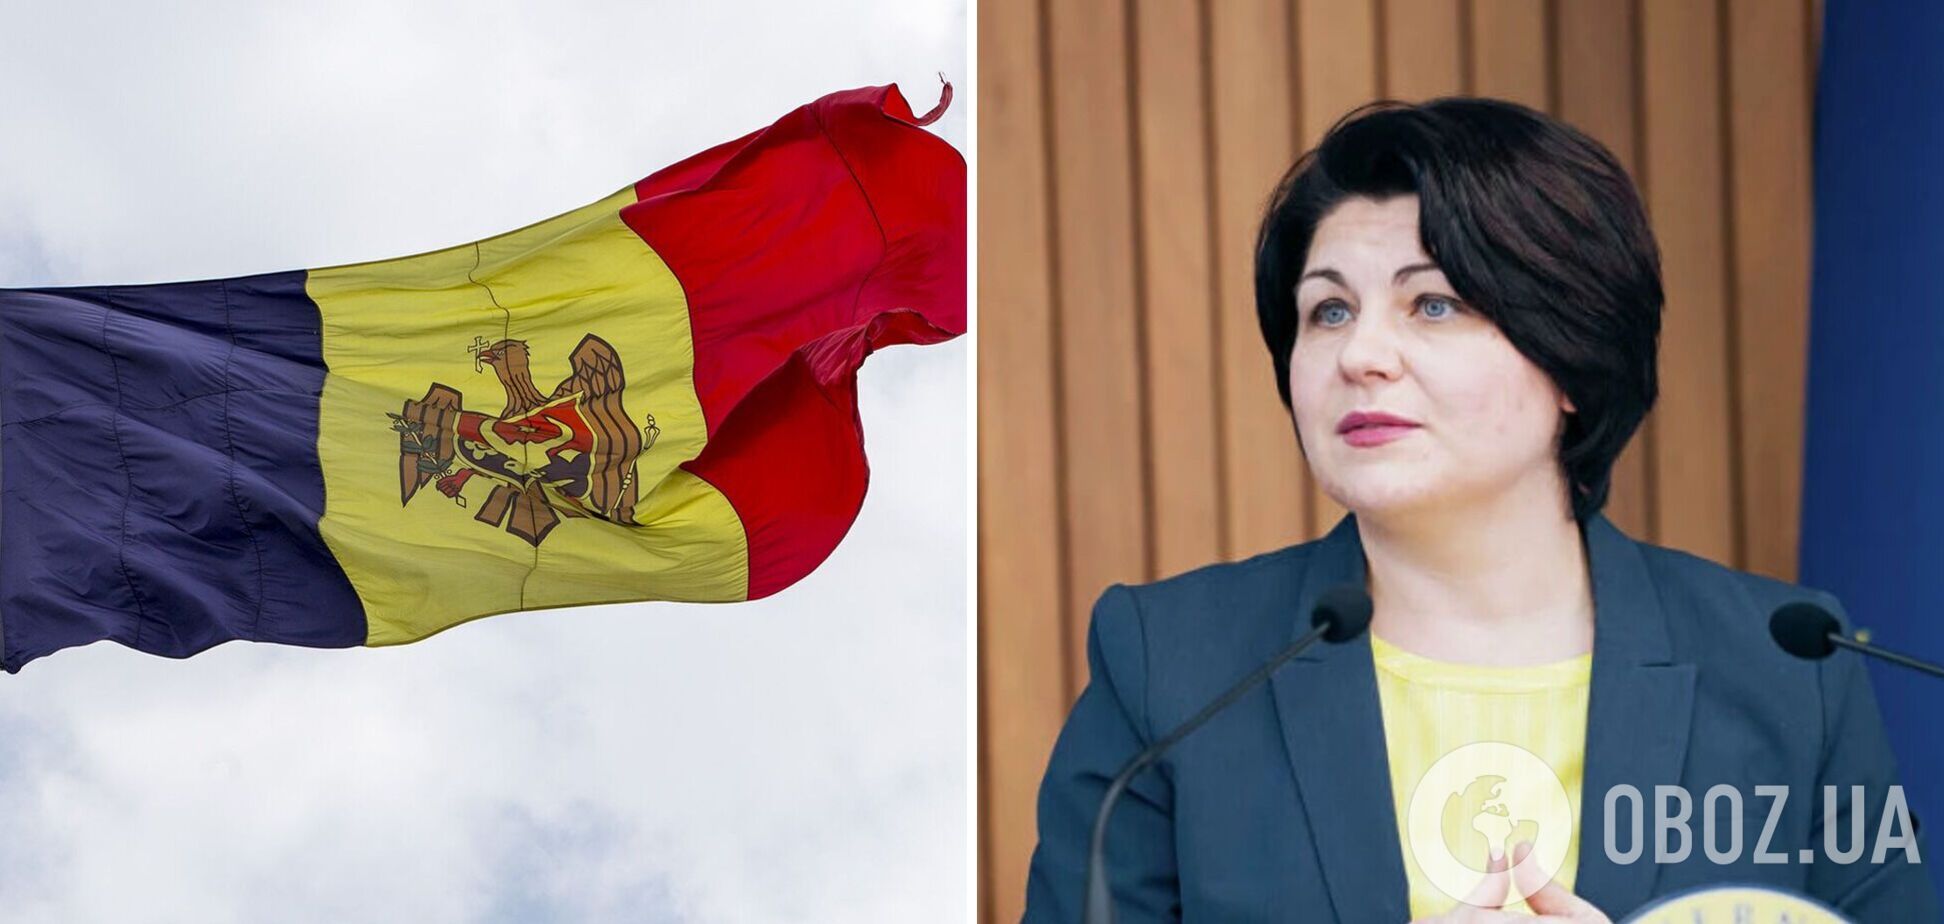 У Молдові перезавантажать уряд: OBOZREVATEL дізнався, хто може стати новим прем’єр-міністром